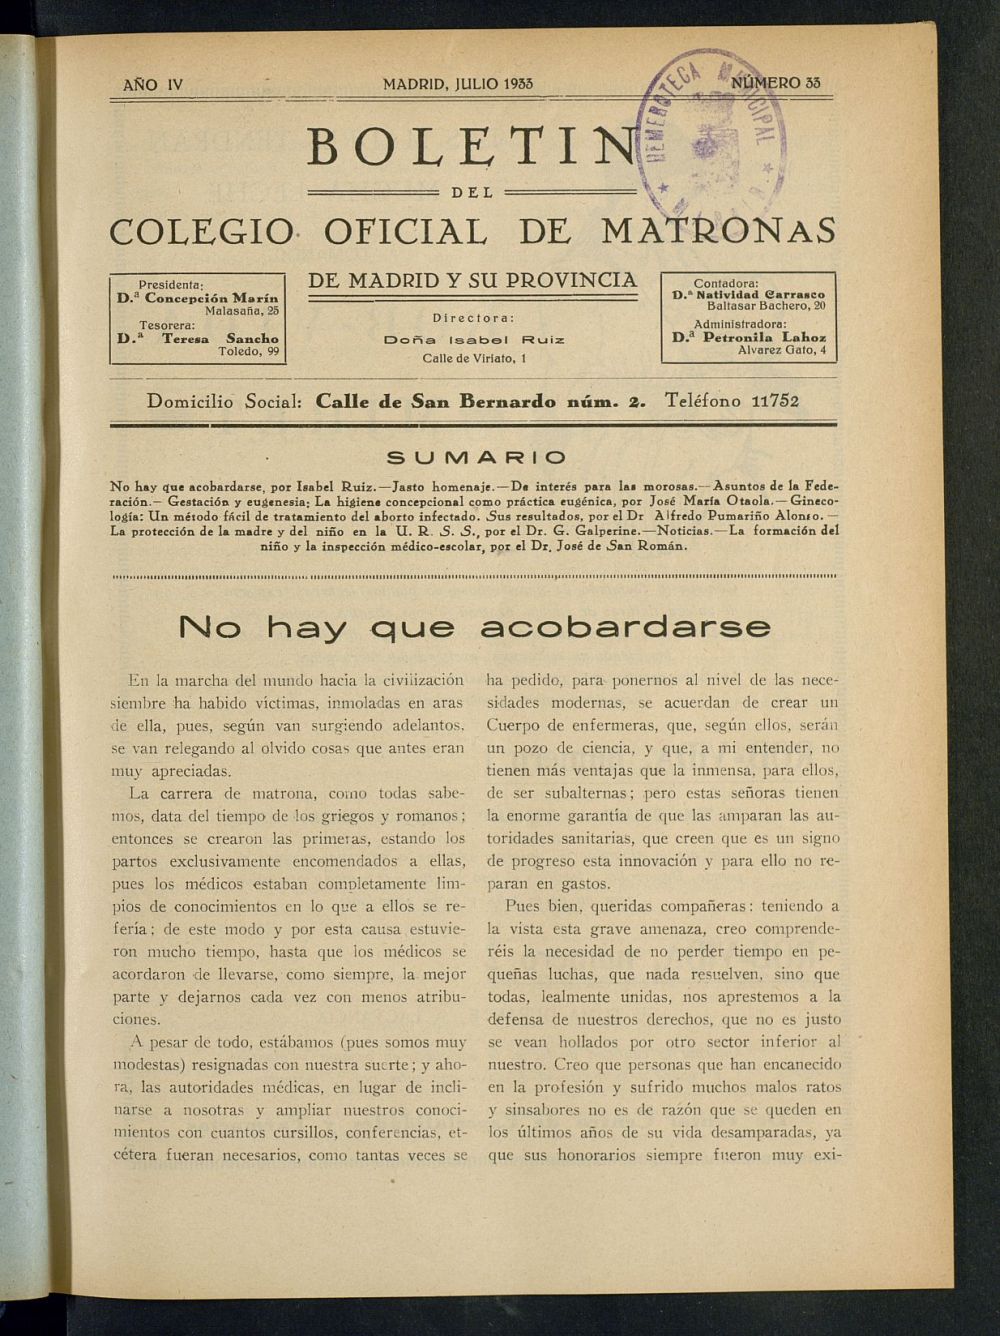 Boletn del Colegio Oficial de Matronas de Madrid y su Provincia de julio de 1933